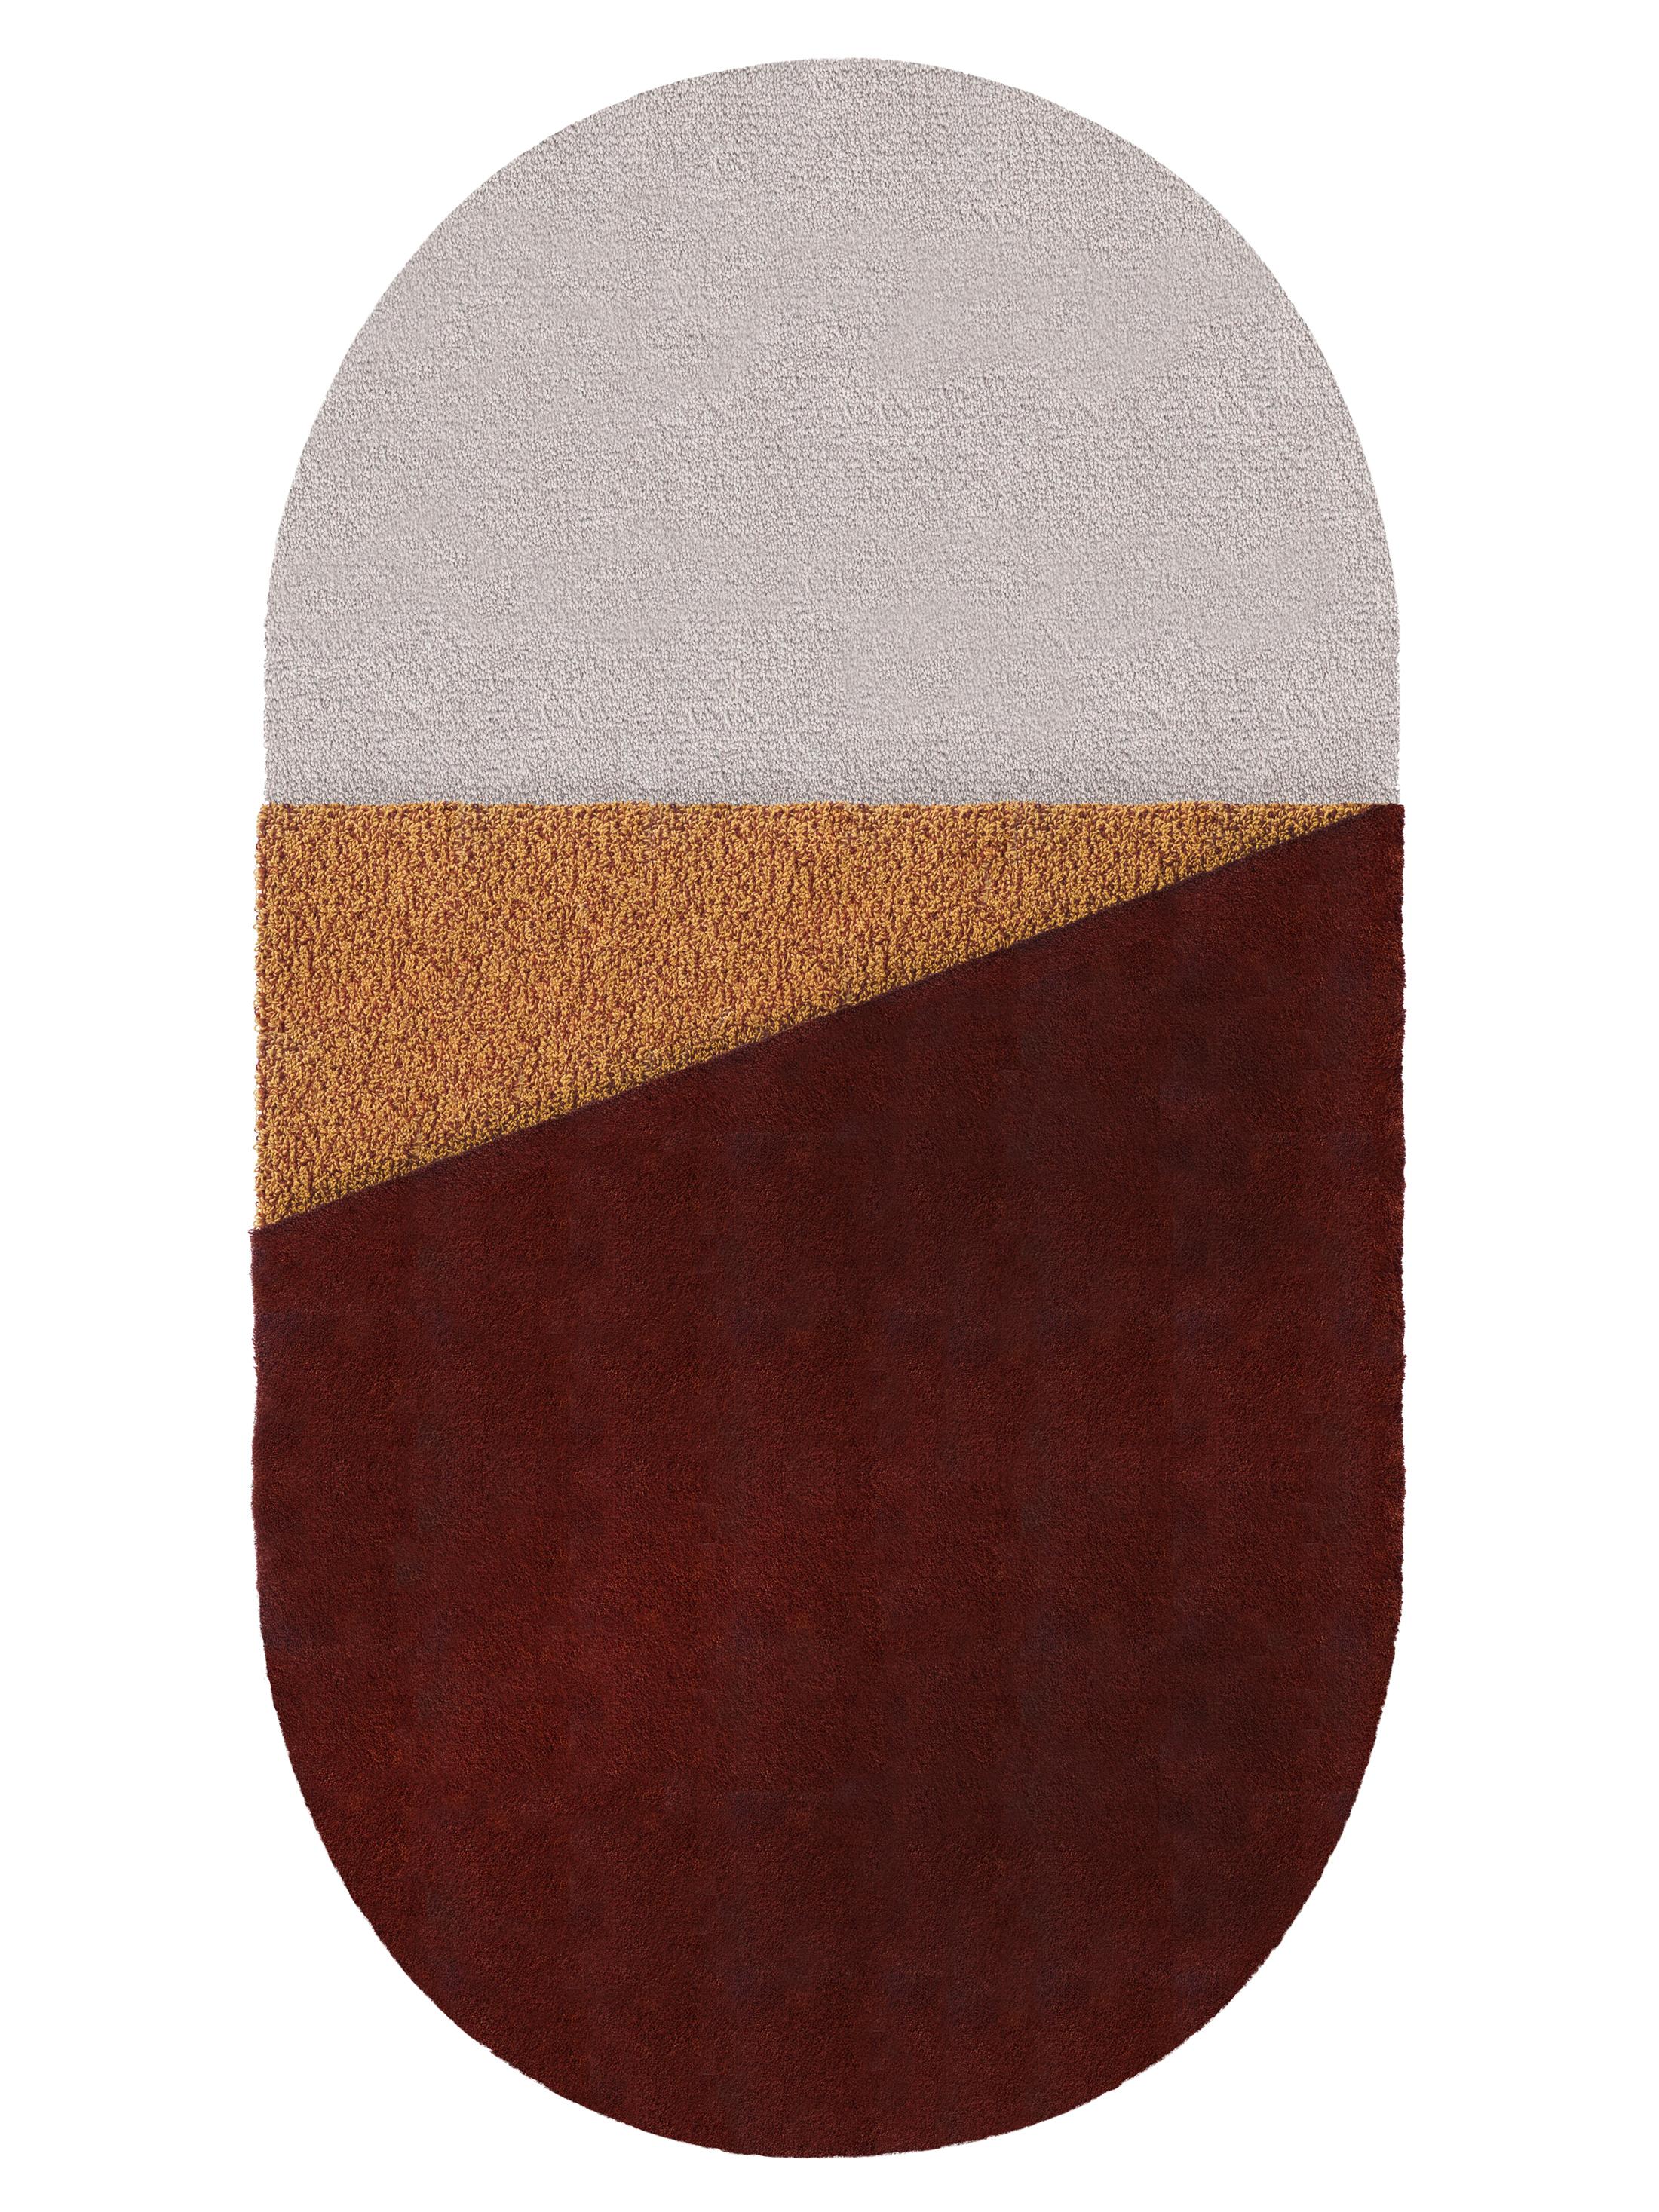 Kleiner Bordeaux Oci Right Teppich von Seraina Lareida
Abmessungen: B 70 x H 130 cm 
MATERIALIEN: 100% New Zeland Wolle bester Qualität.
Erhältlich in den Größen Medium und Large. Auch in folgenden Farben erhältlich: Brick/Pink, Gelb/Grau,